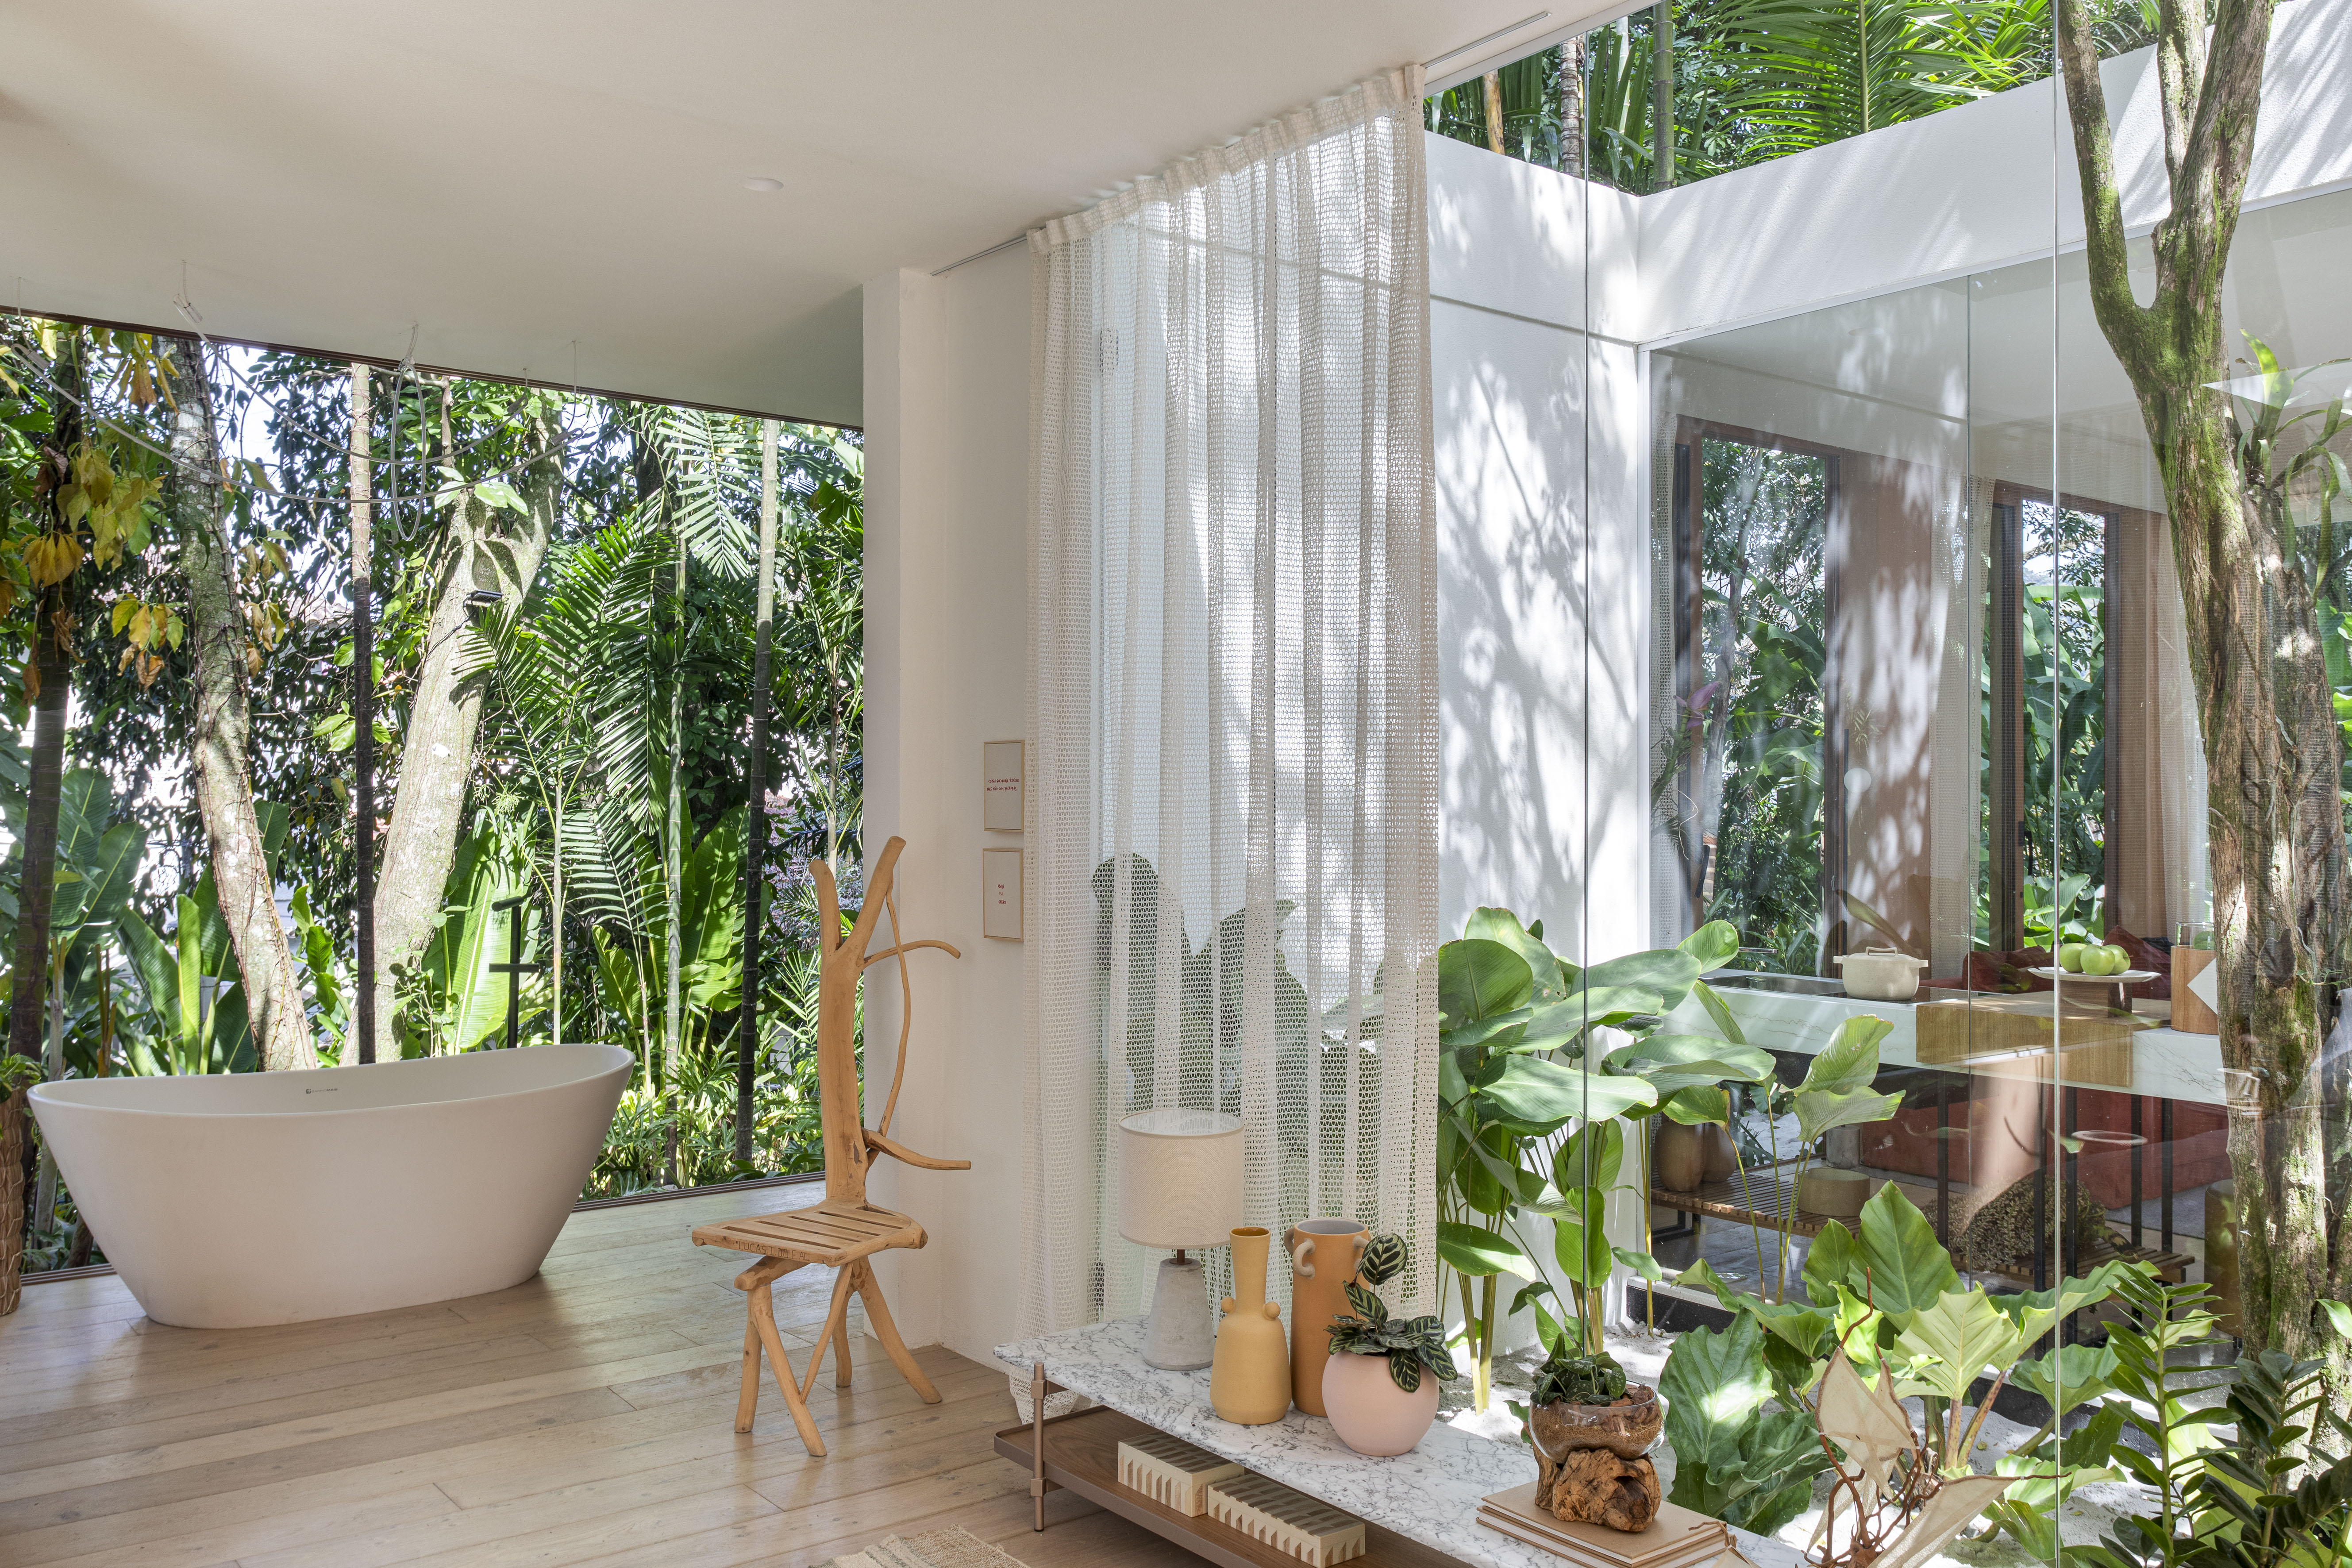 Casa de campo de 105 m² no meio da natureza é feita com três contêineres. Projeto de Up3 Arquitetura para a CASACOR Rio de Janeiro 2023, Na foto, banheiro com banheira, parede de vidro e vista para o jardim.